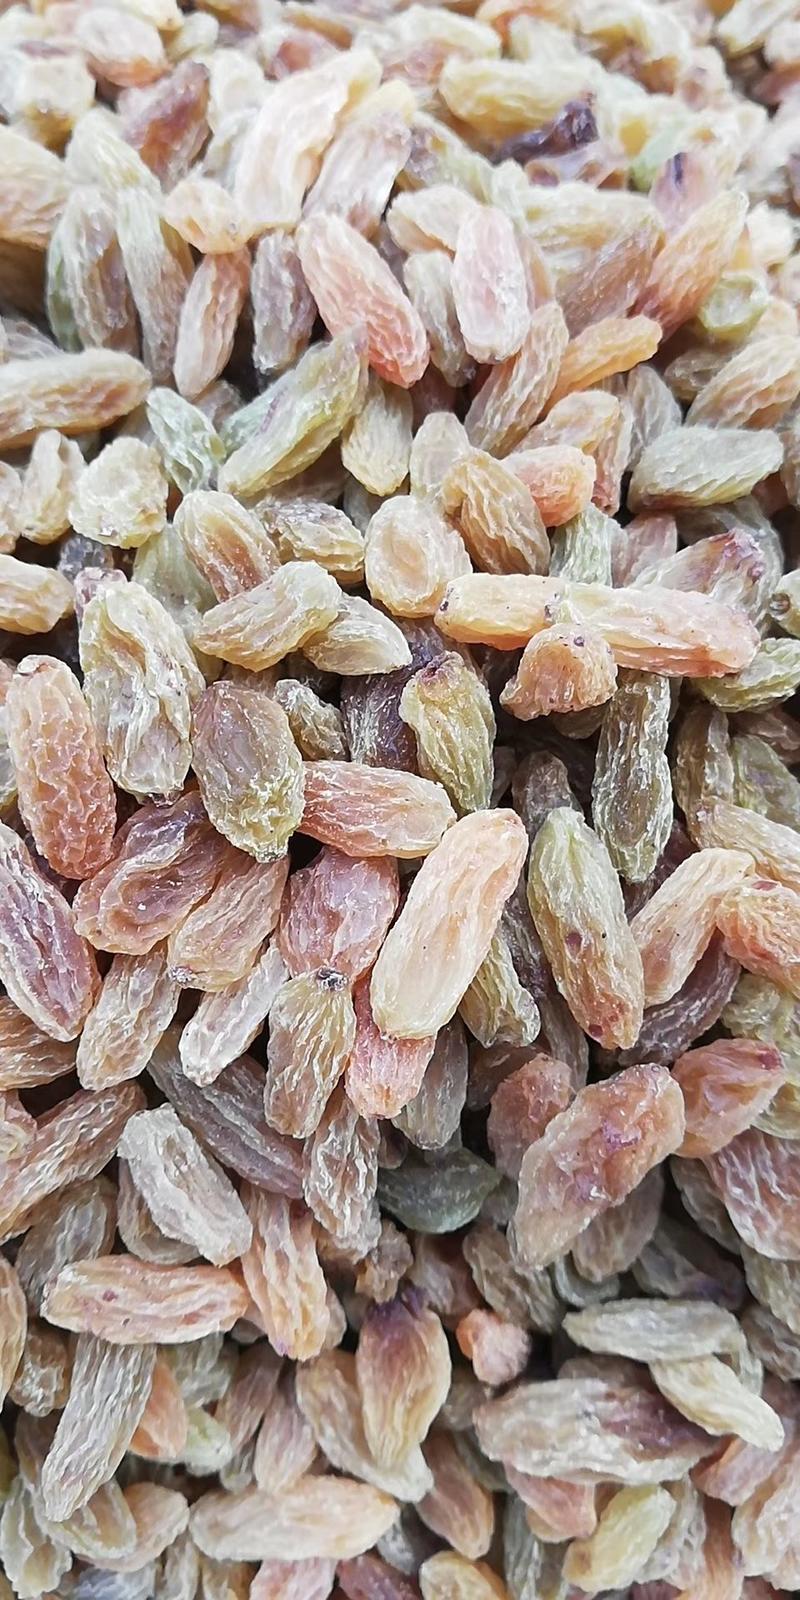 新疆葡萄干吐鲁番绿葡萄干大颗粒干度好厂家货源价格低